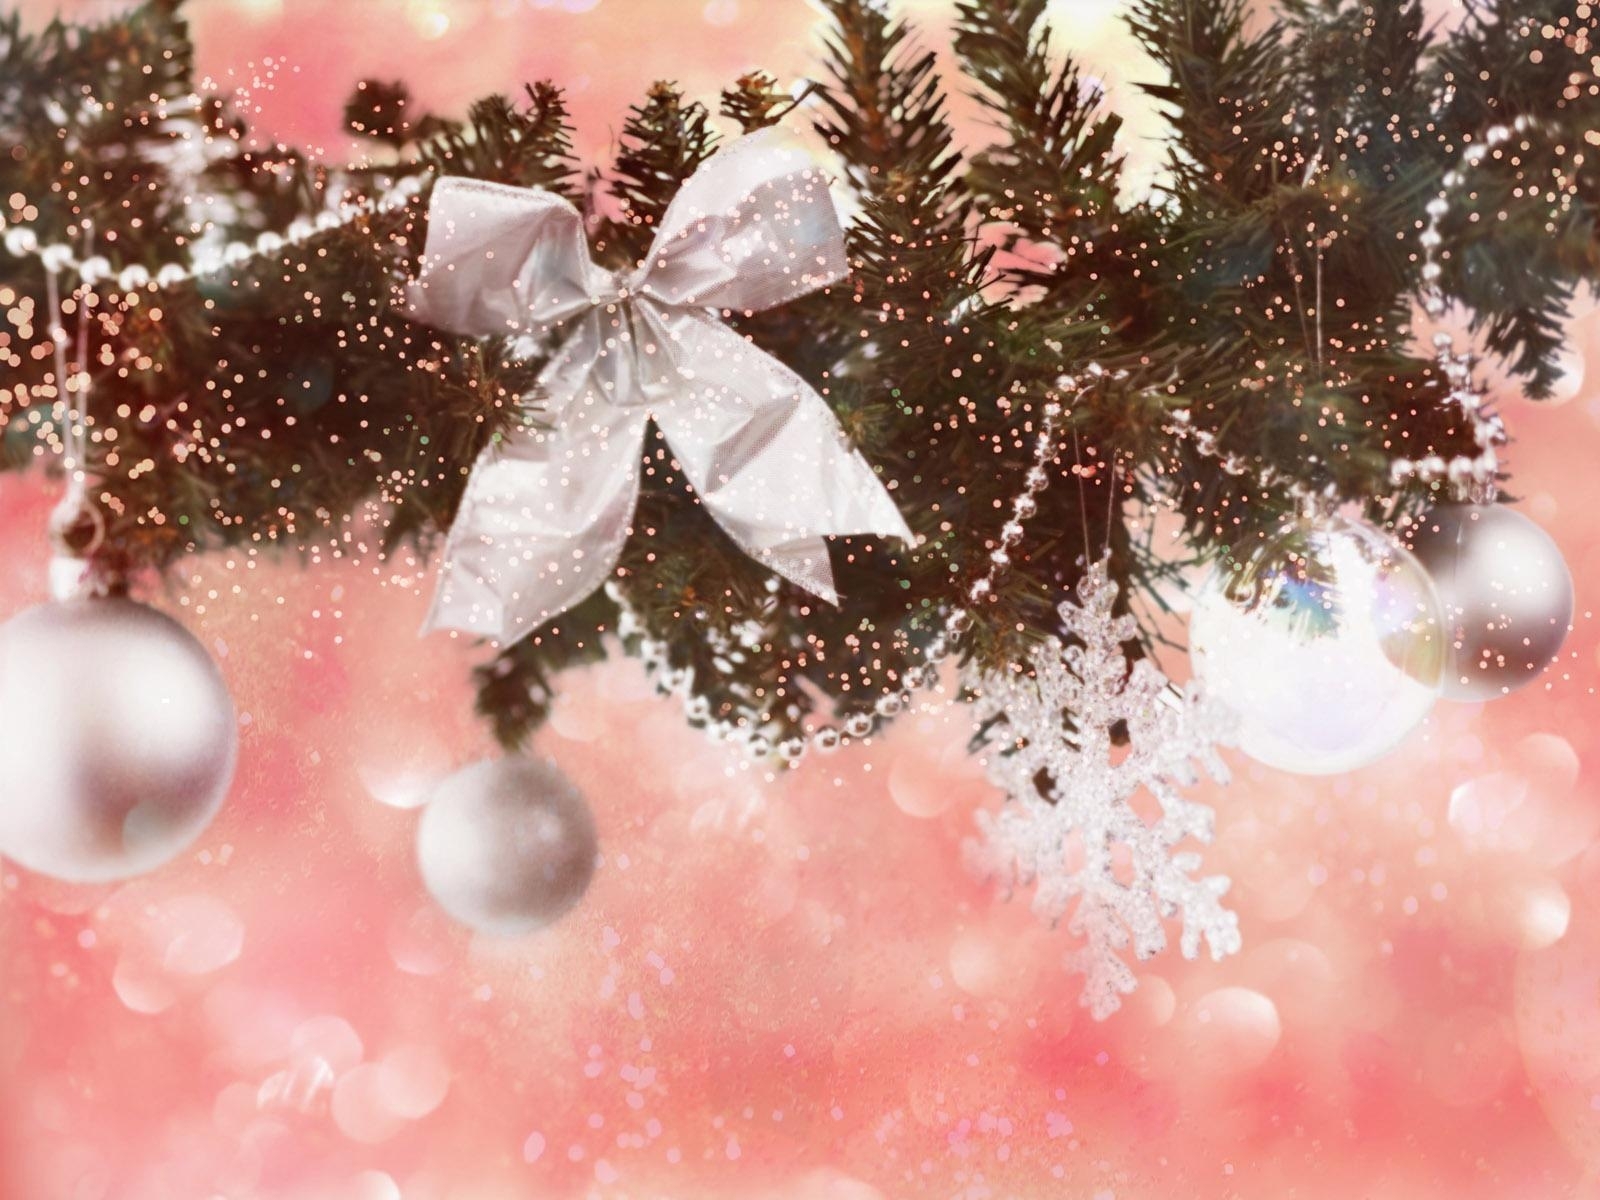 Скачать обои бесплатно Рождество (Christmas Xmas), Праздники, Новый Год (New Year), Фон картинка на рабочий стол ПК